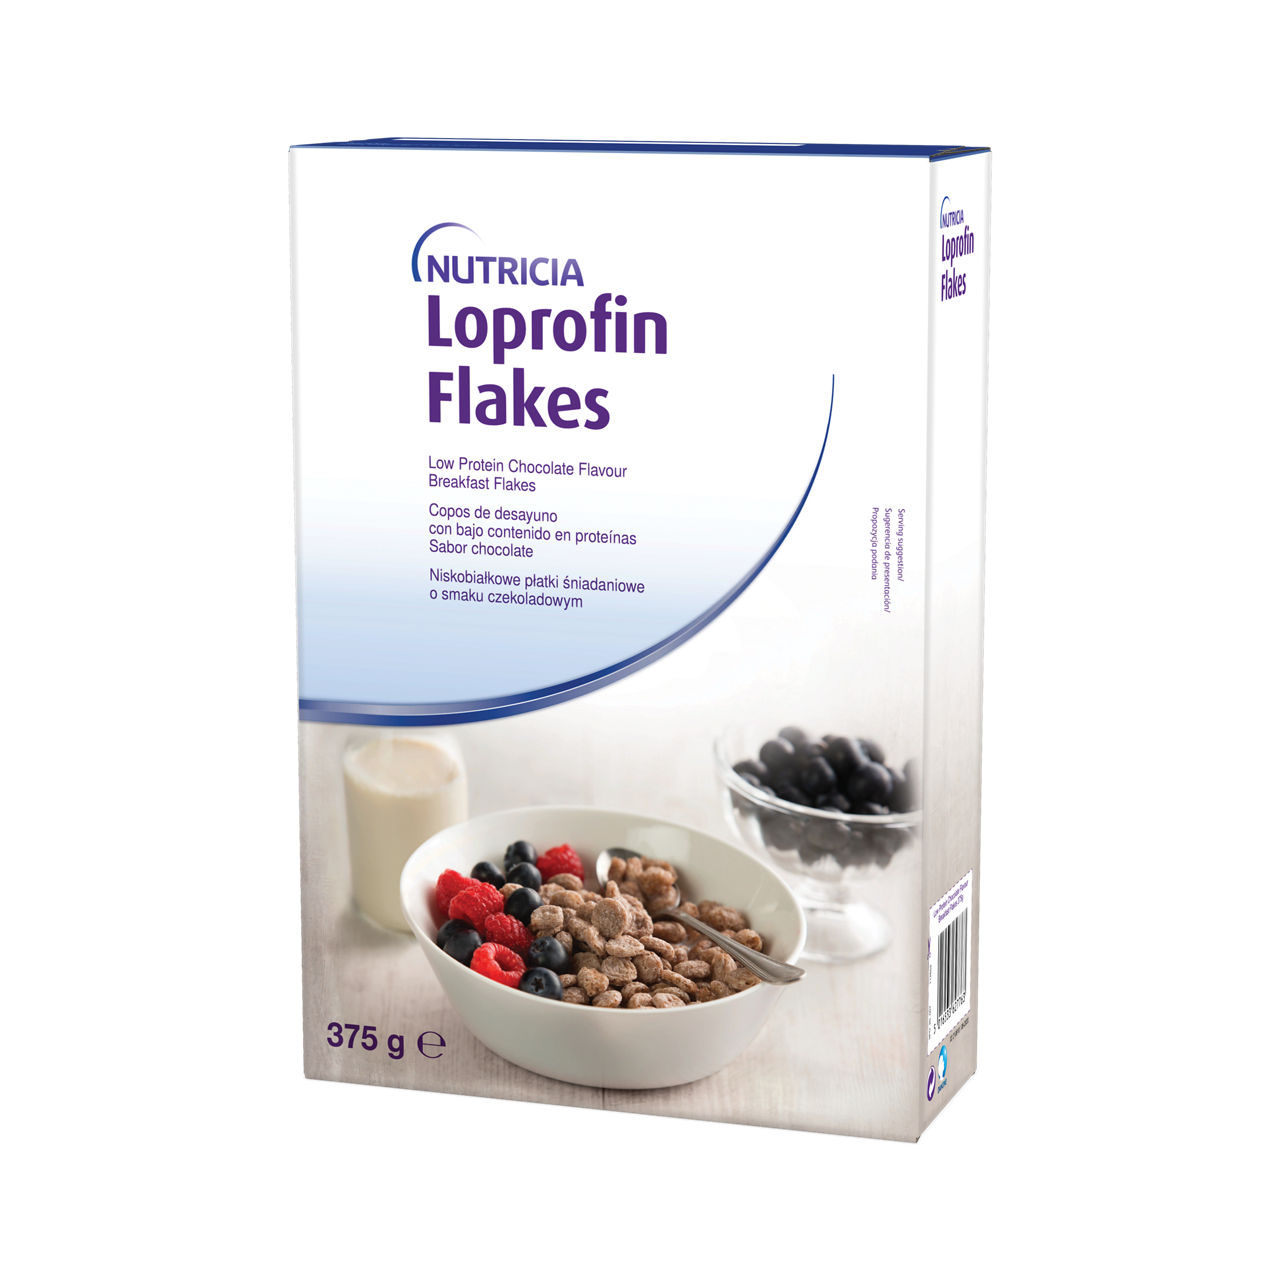 en-GB,Loprofin Cereal Flakes